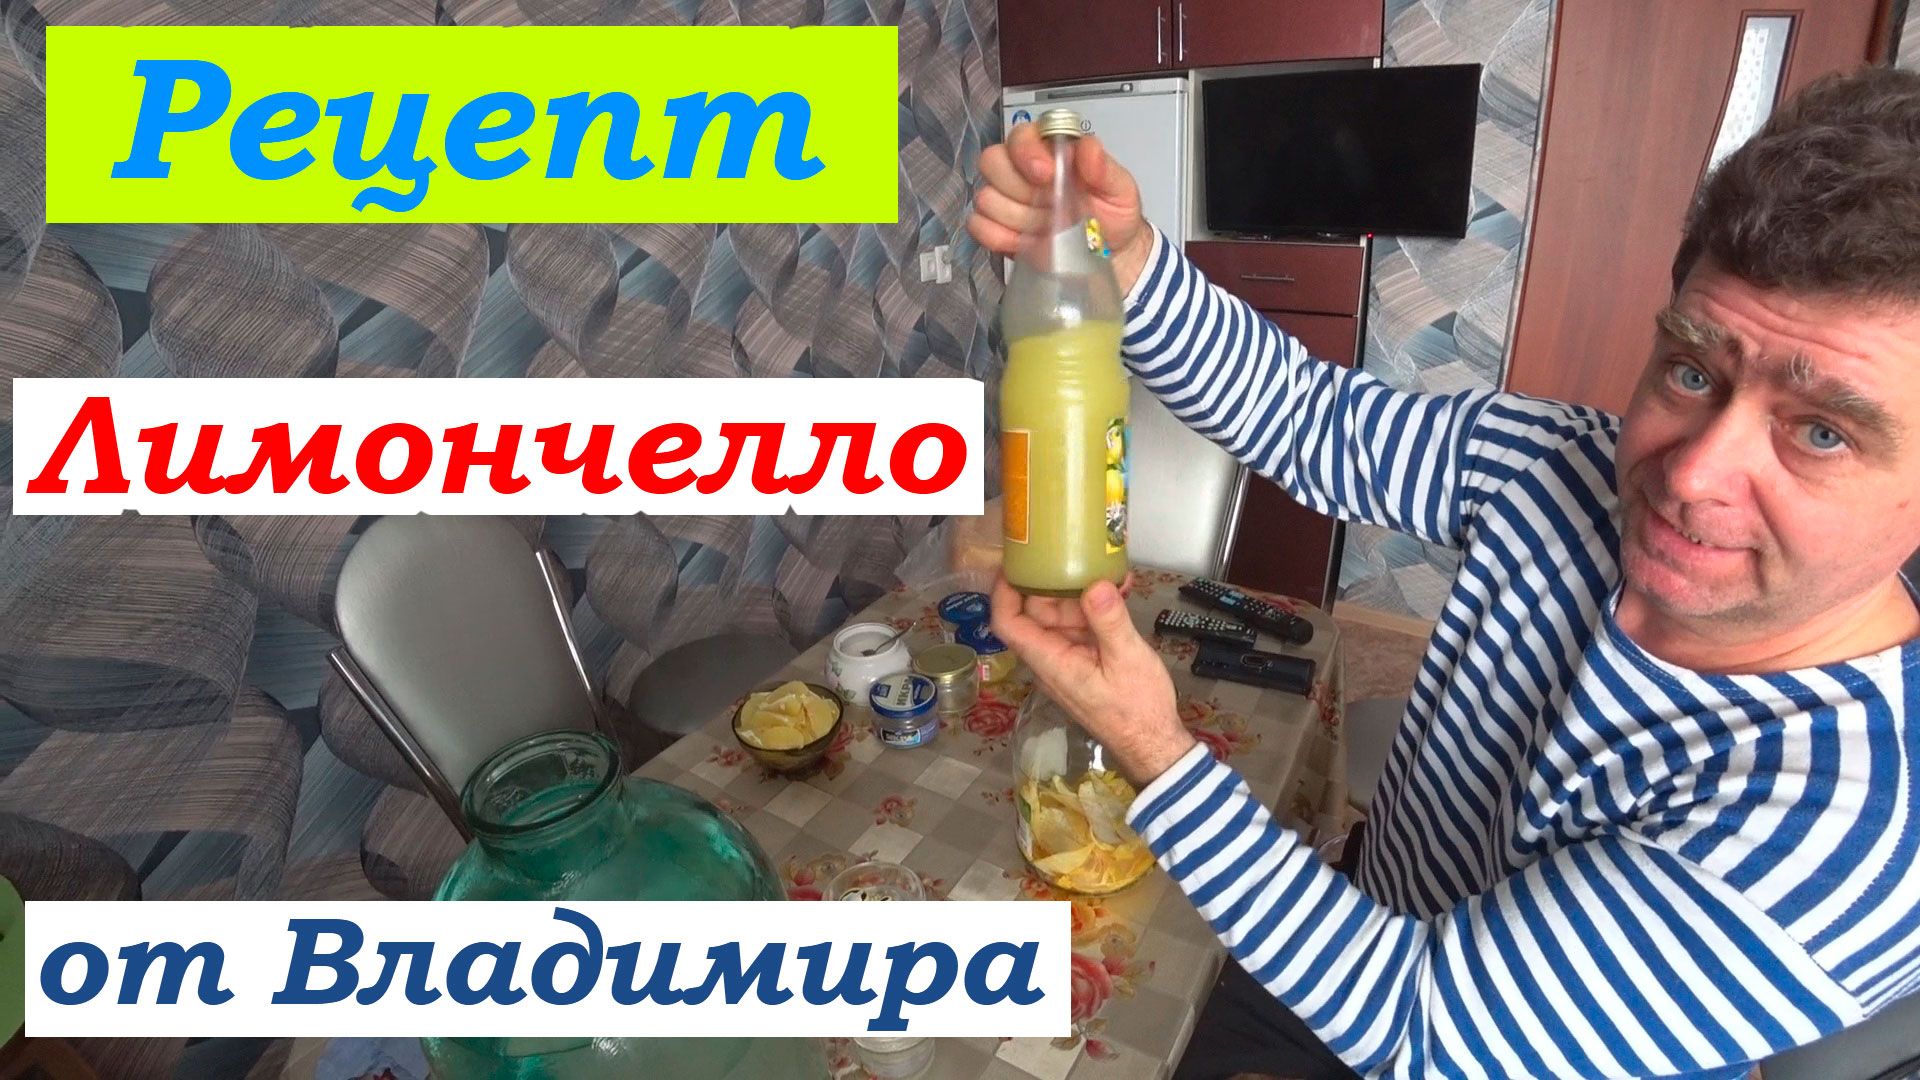 Рецепт лимончелло в домашних условиях или лимонный ликер на спирту. Пошагово. В гостях у Владимира.